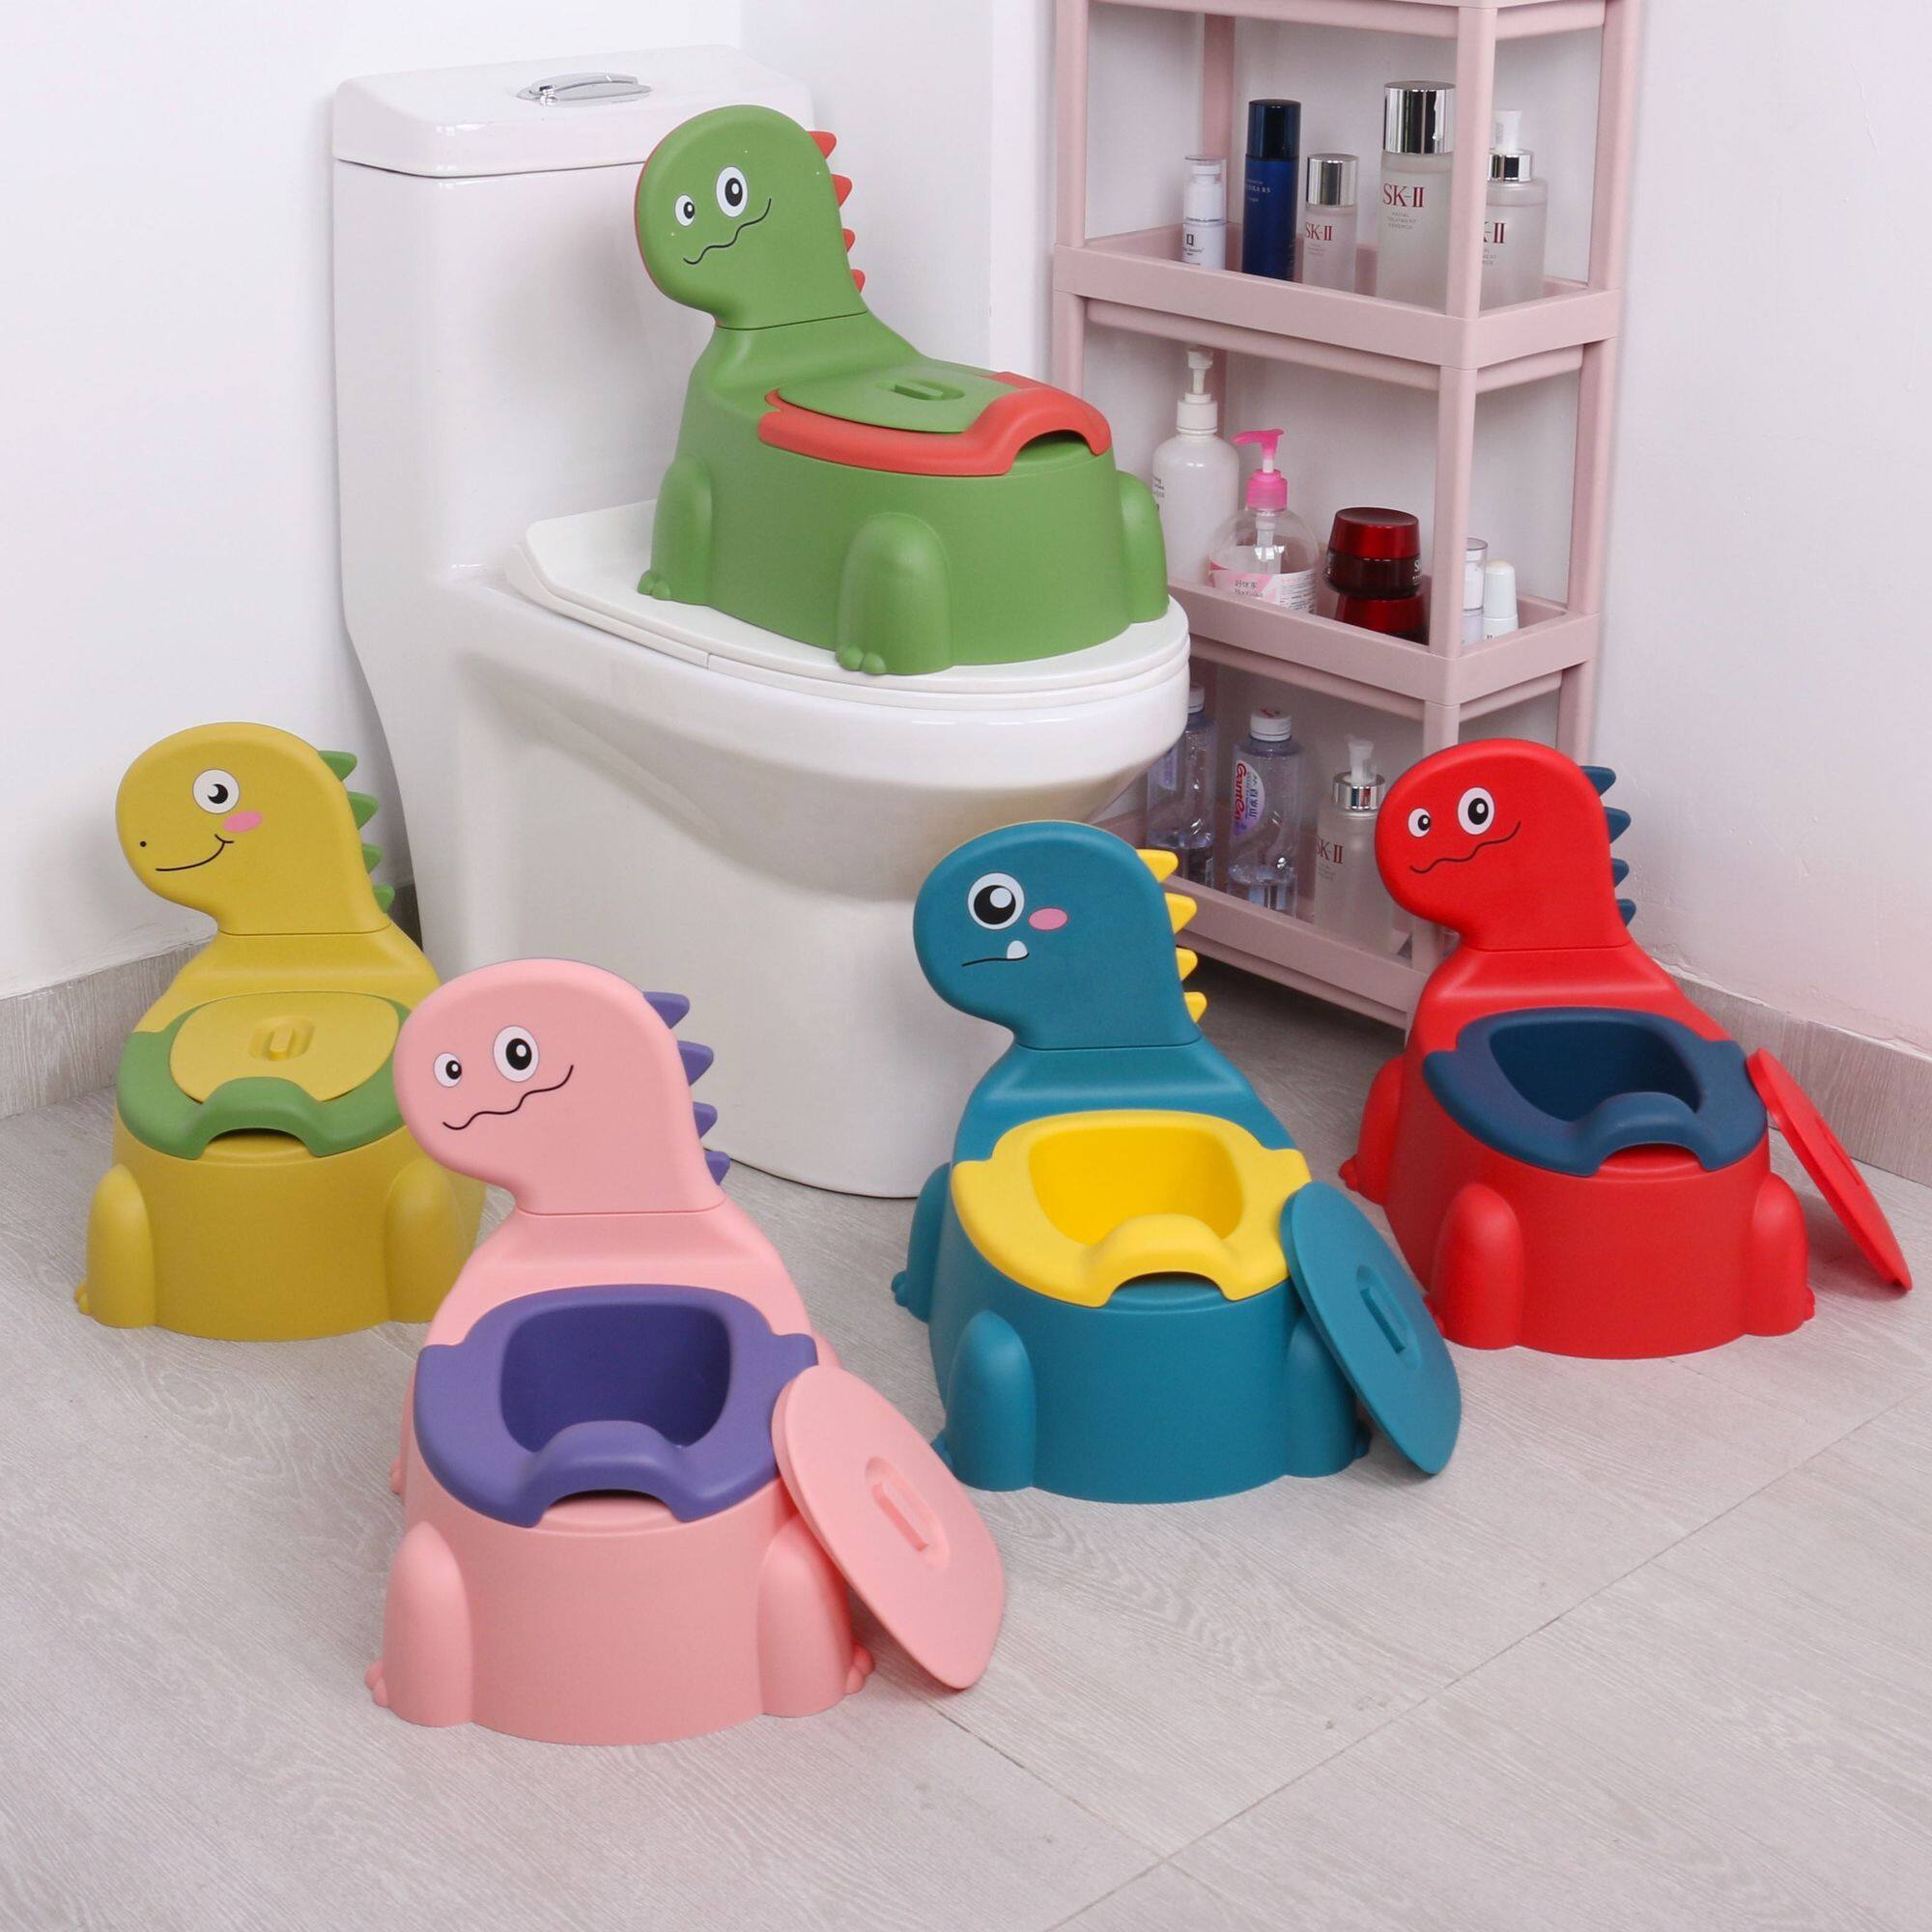 Bô tập cho bé đi vệ sinh mới ghế khủng long hoạt hình dày trẻ em Bô đặc